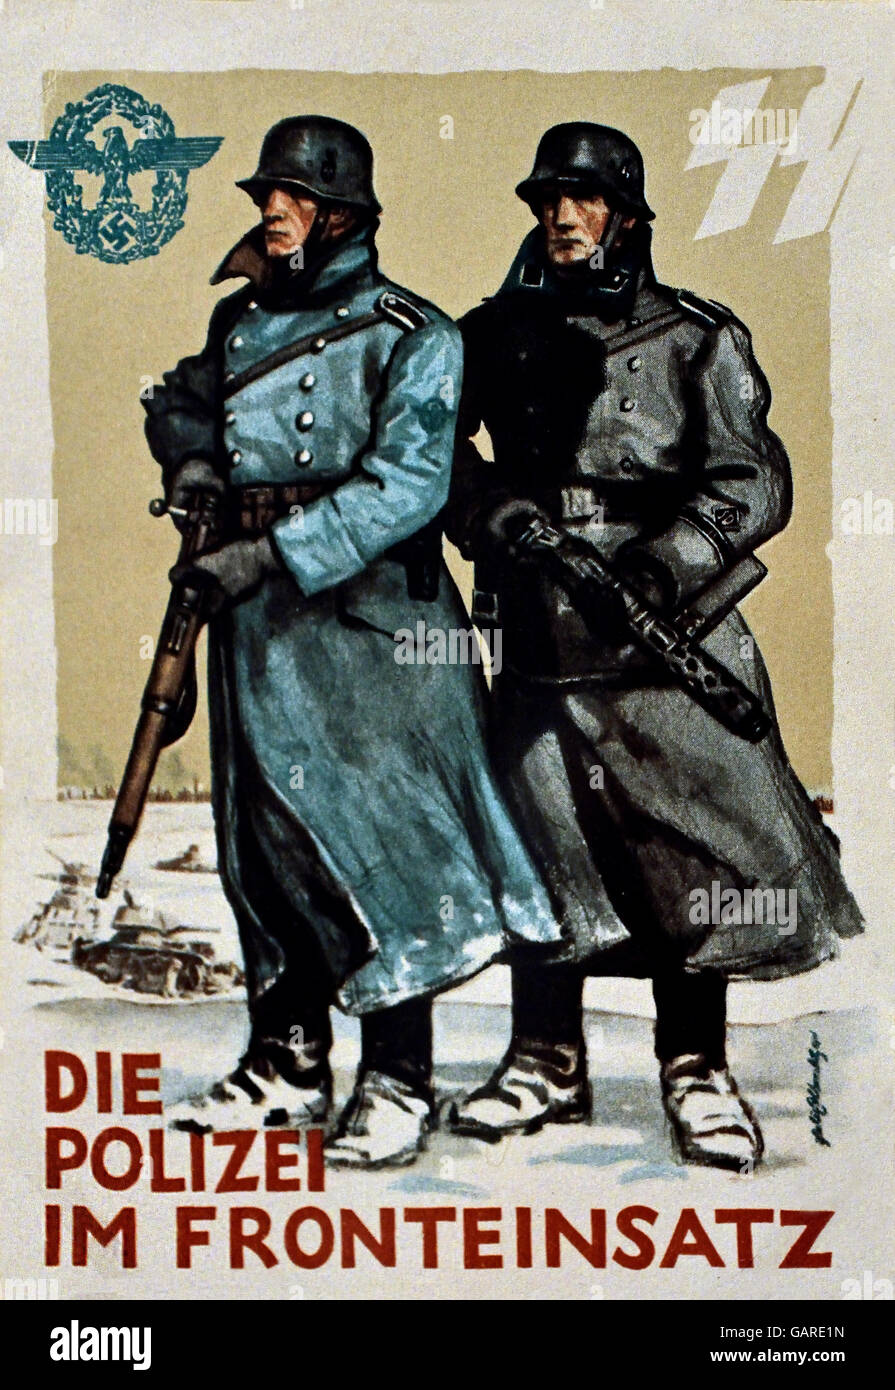 Sterben Sie Polizei Im Fronteinsatz - Polizei vordere Einheit Berlin Nazideutschland (Postkarte für deutsche Polizei Tag 1942) Stockfoto